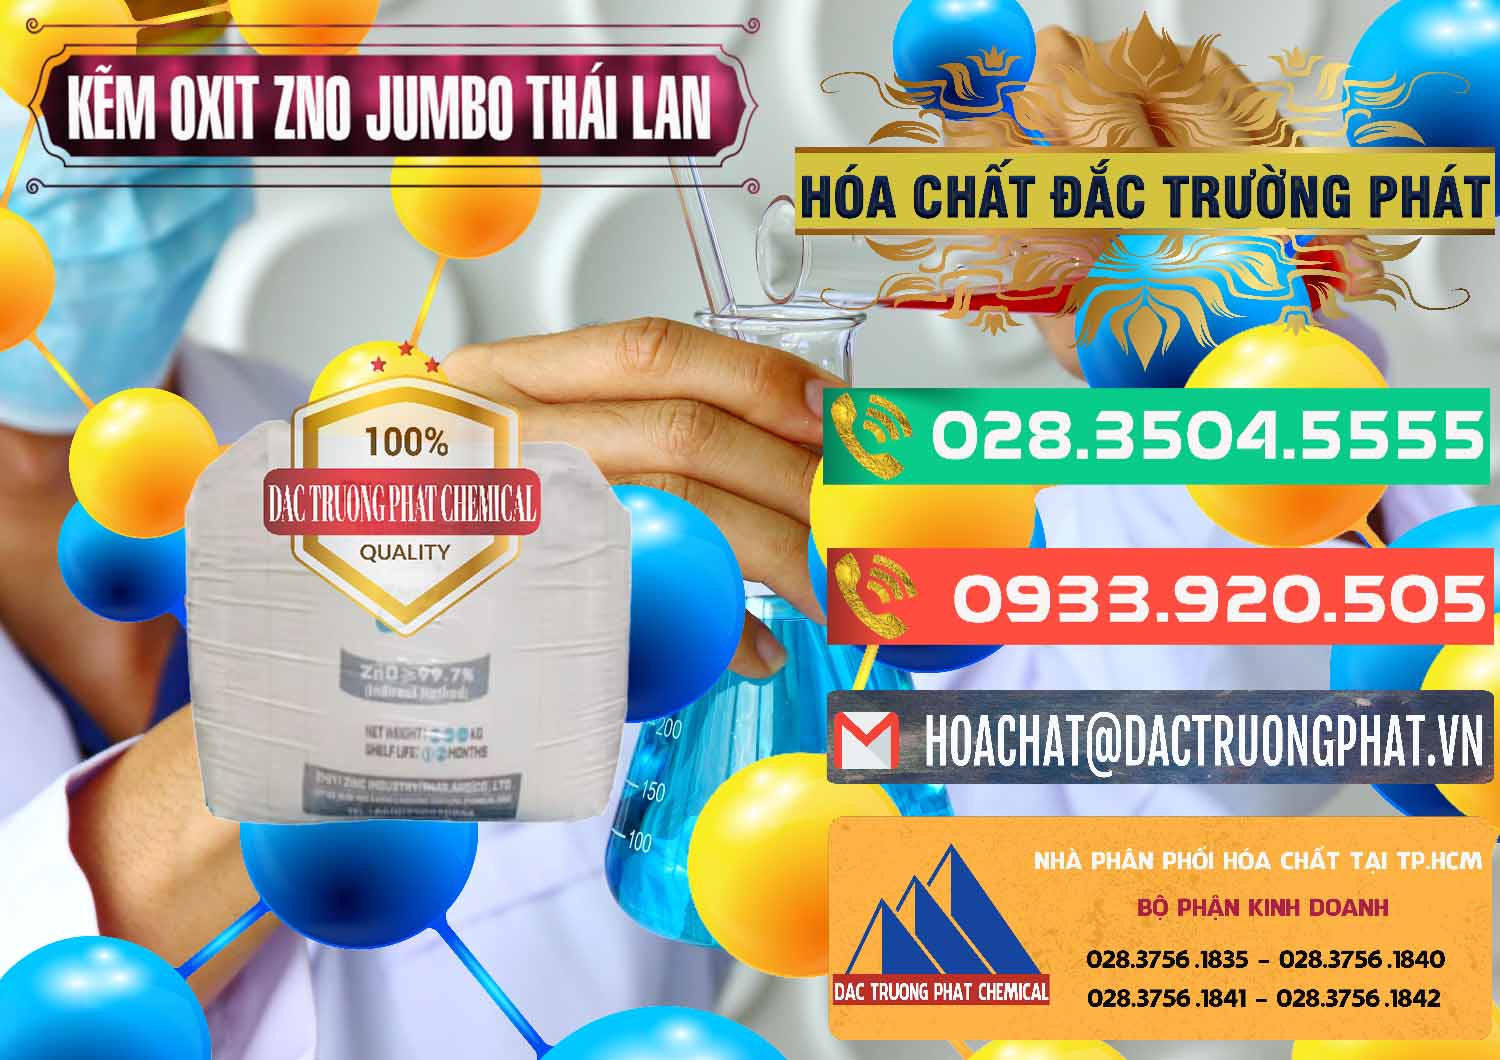 Đơn vị chuyên bán _ phân phối Zinc Oxide - Bột Kẽm Oxit ZNO Jumbo Bành Thái Lan Thailand - 0370 - Nơi cung cấp ( phân phối ) hóa chất tại TP.HCM - congtyhoachat.com.vn